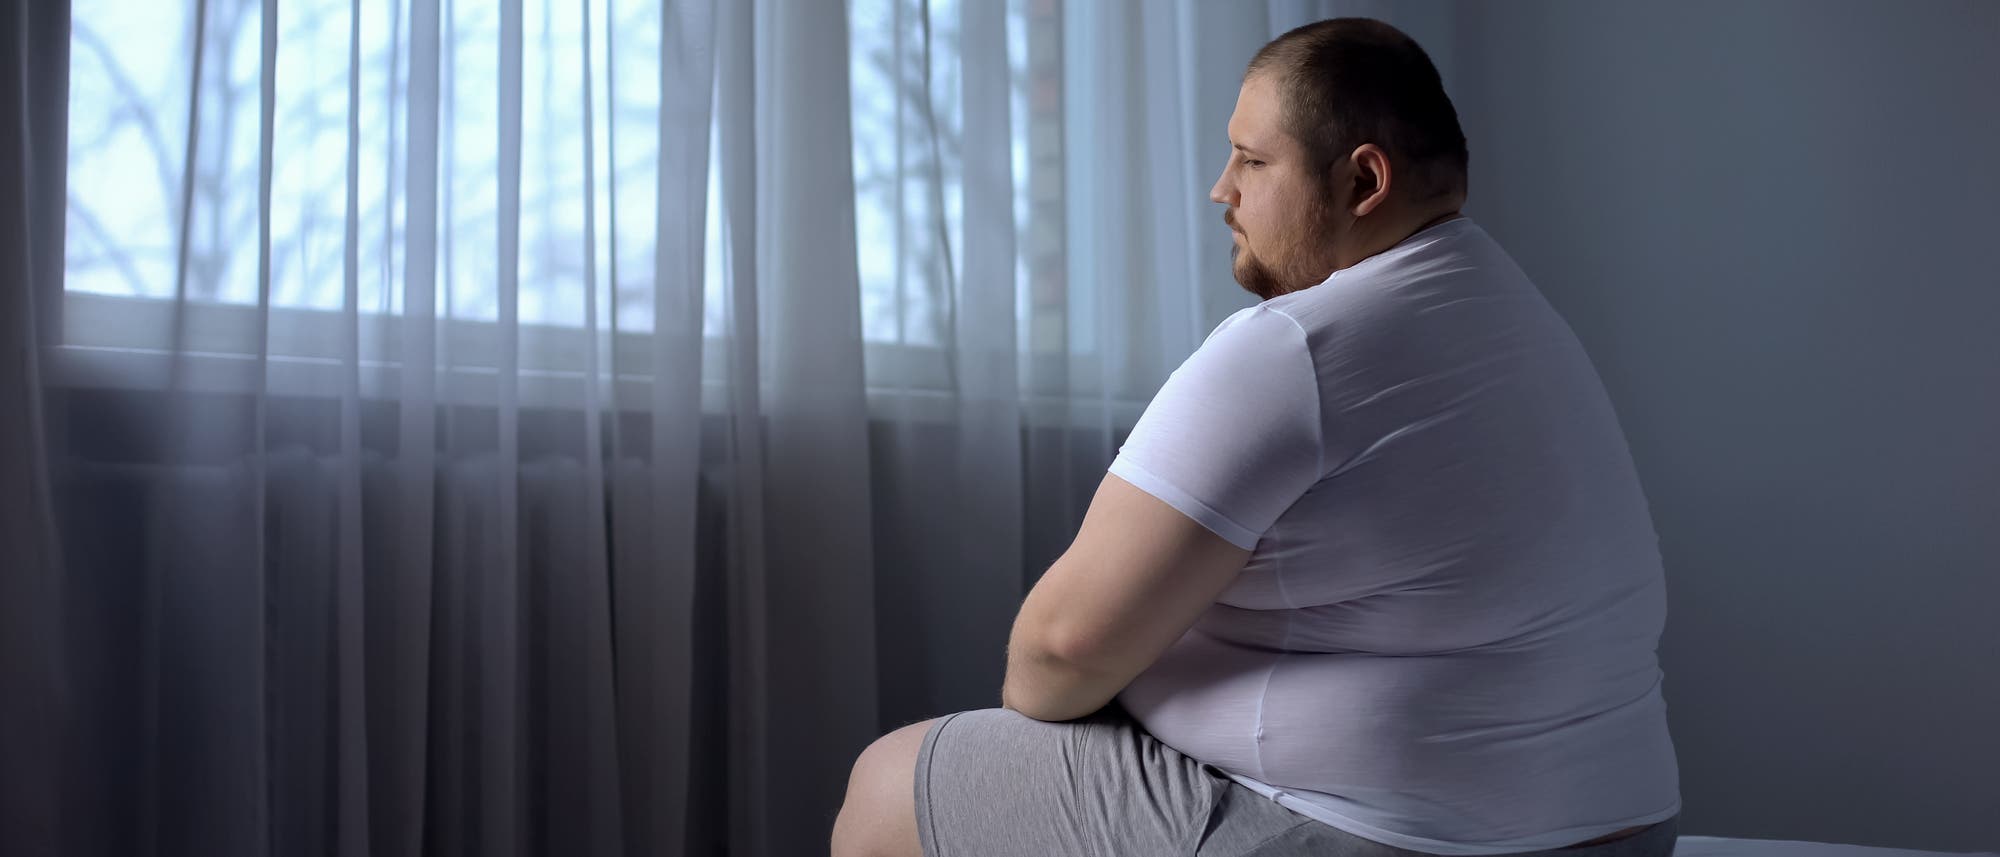 Übergewichtiger Mann sitzt auf Bettkante